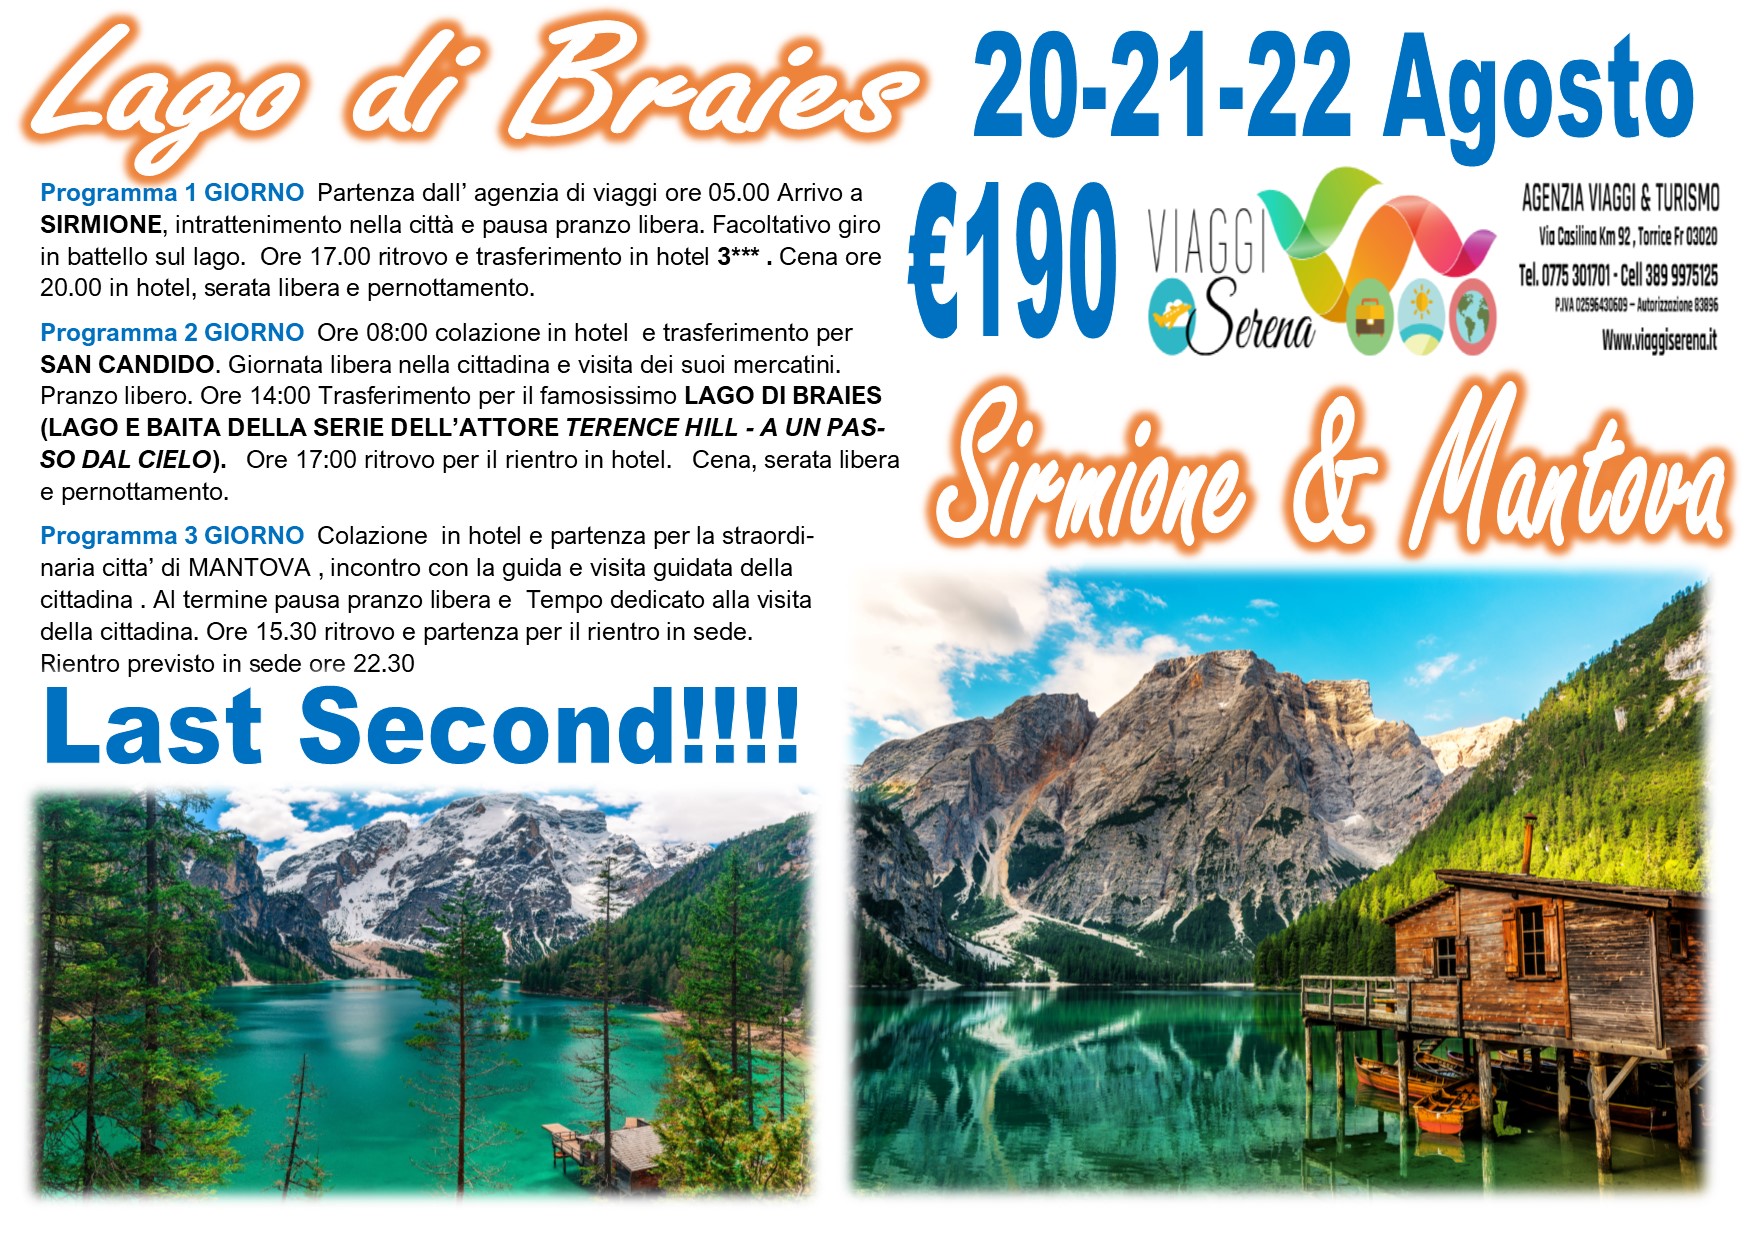 Viaggi di Gruppo: “PROMO LAST SECOND” Lago di Braies , Sirmione & Mantova 20-21-22 Agosto € 190,00